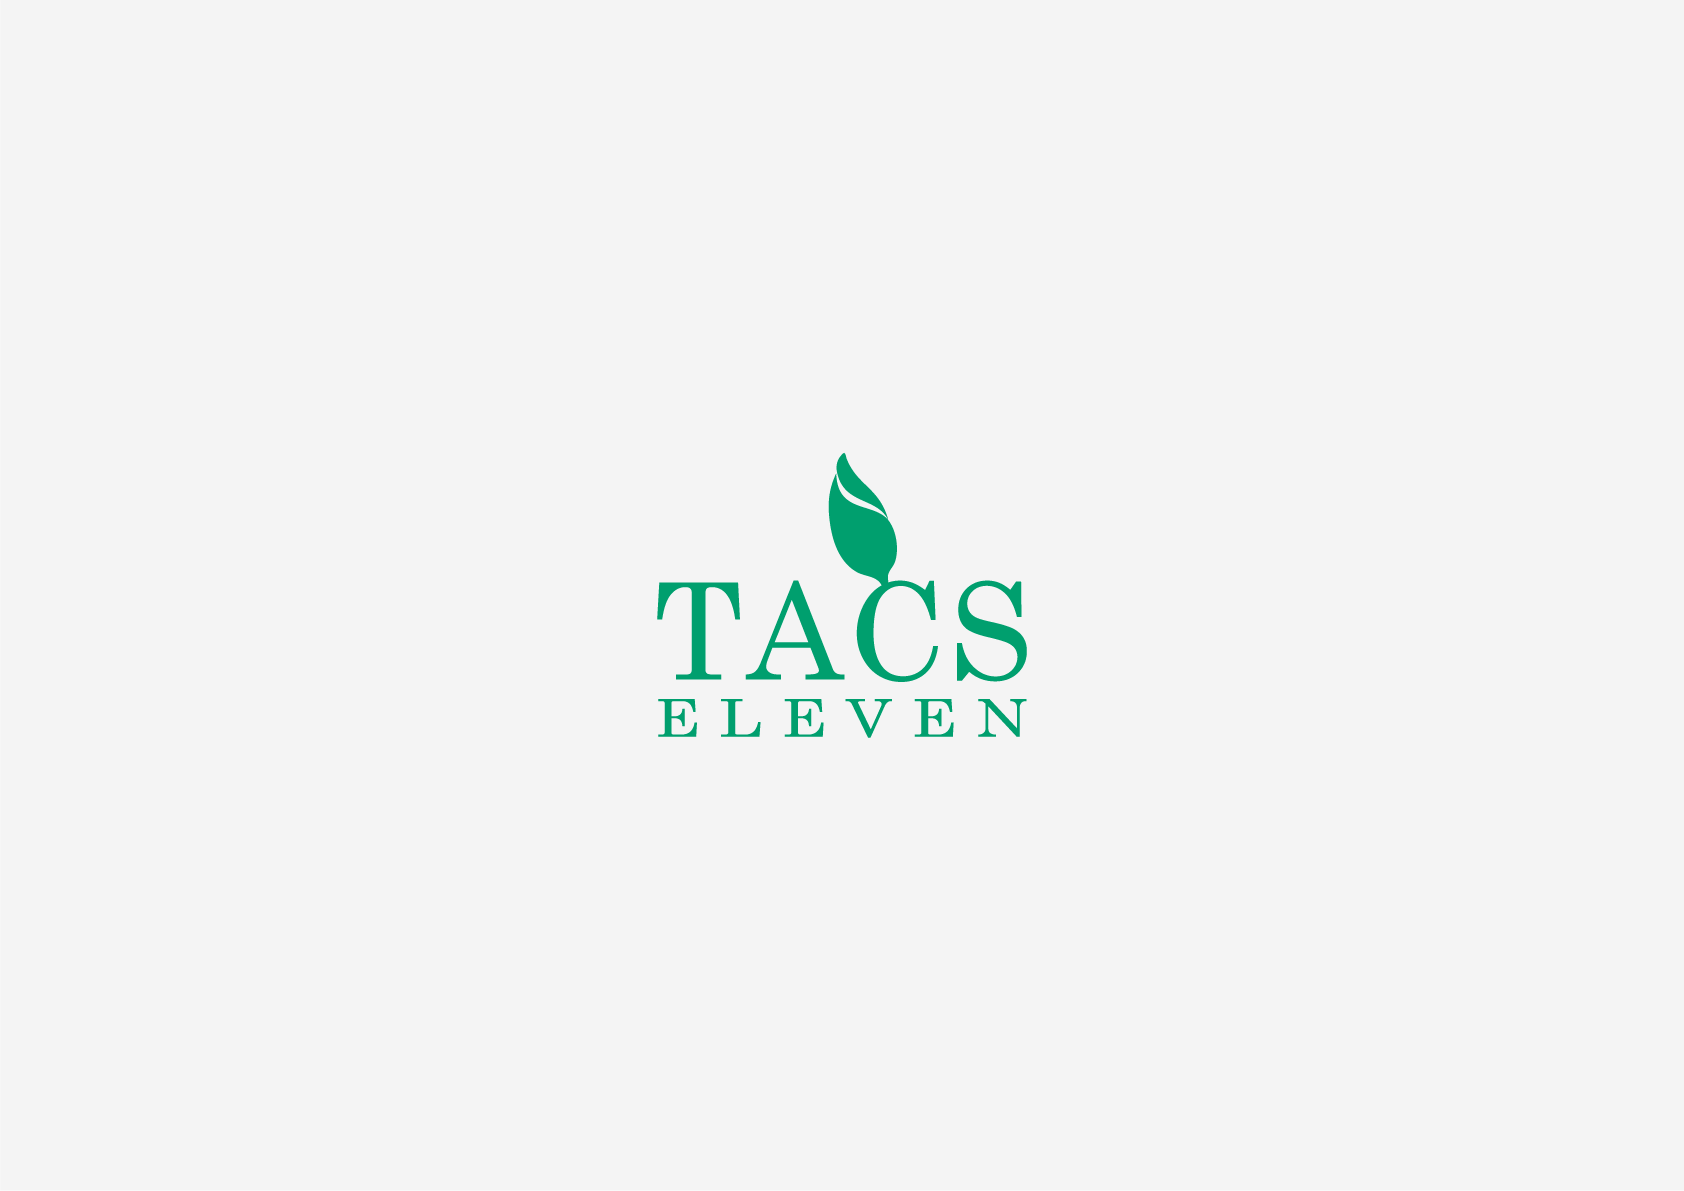 tacs_eleven_logo.png